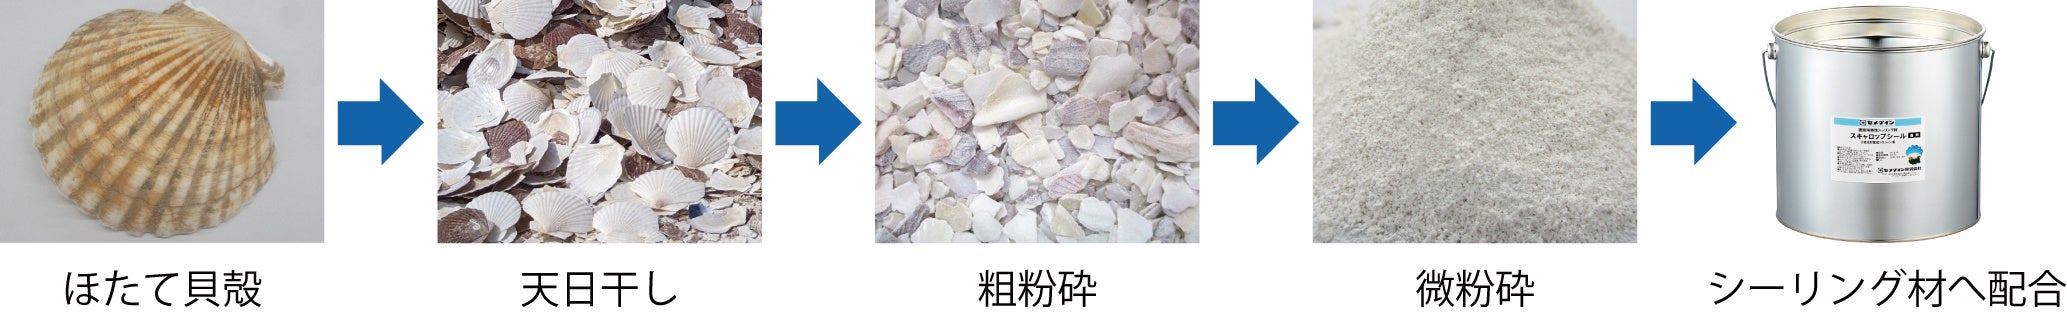 ほたて貝殻の粉末を利用したシーリング材「スキャロップシール®」を開発